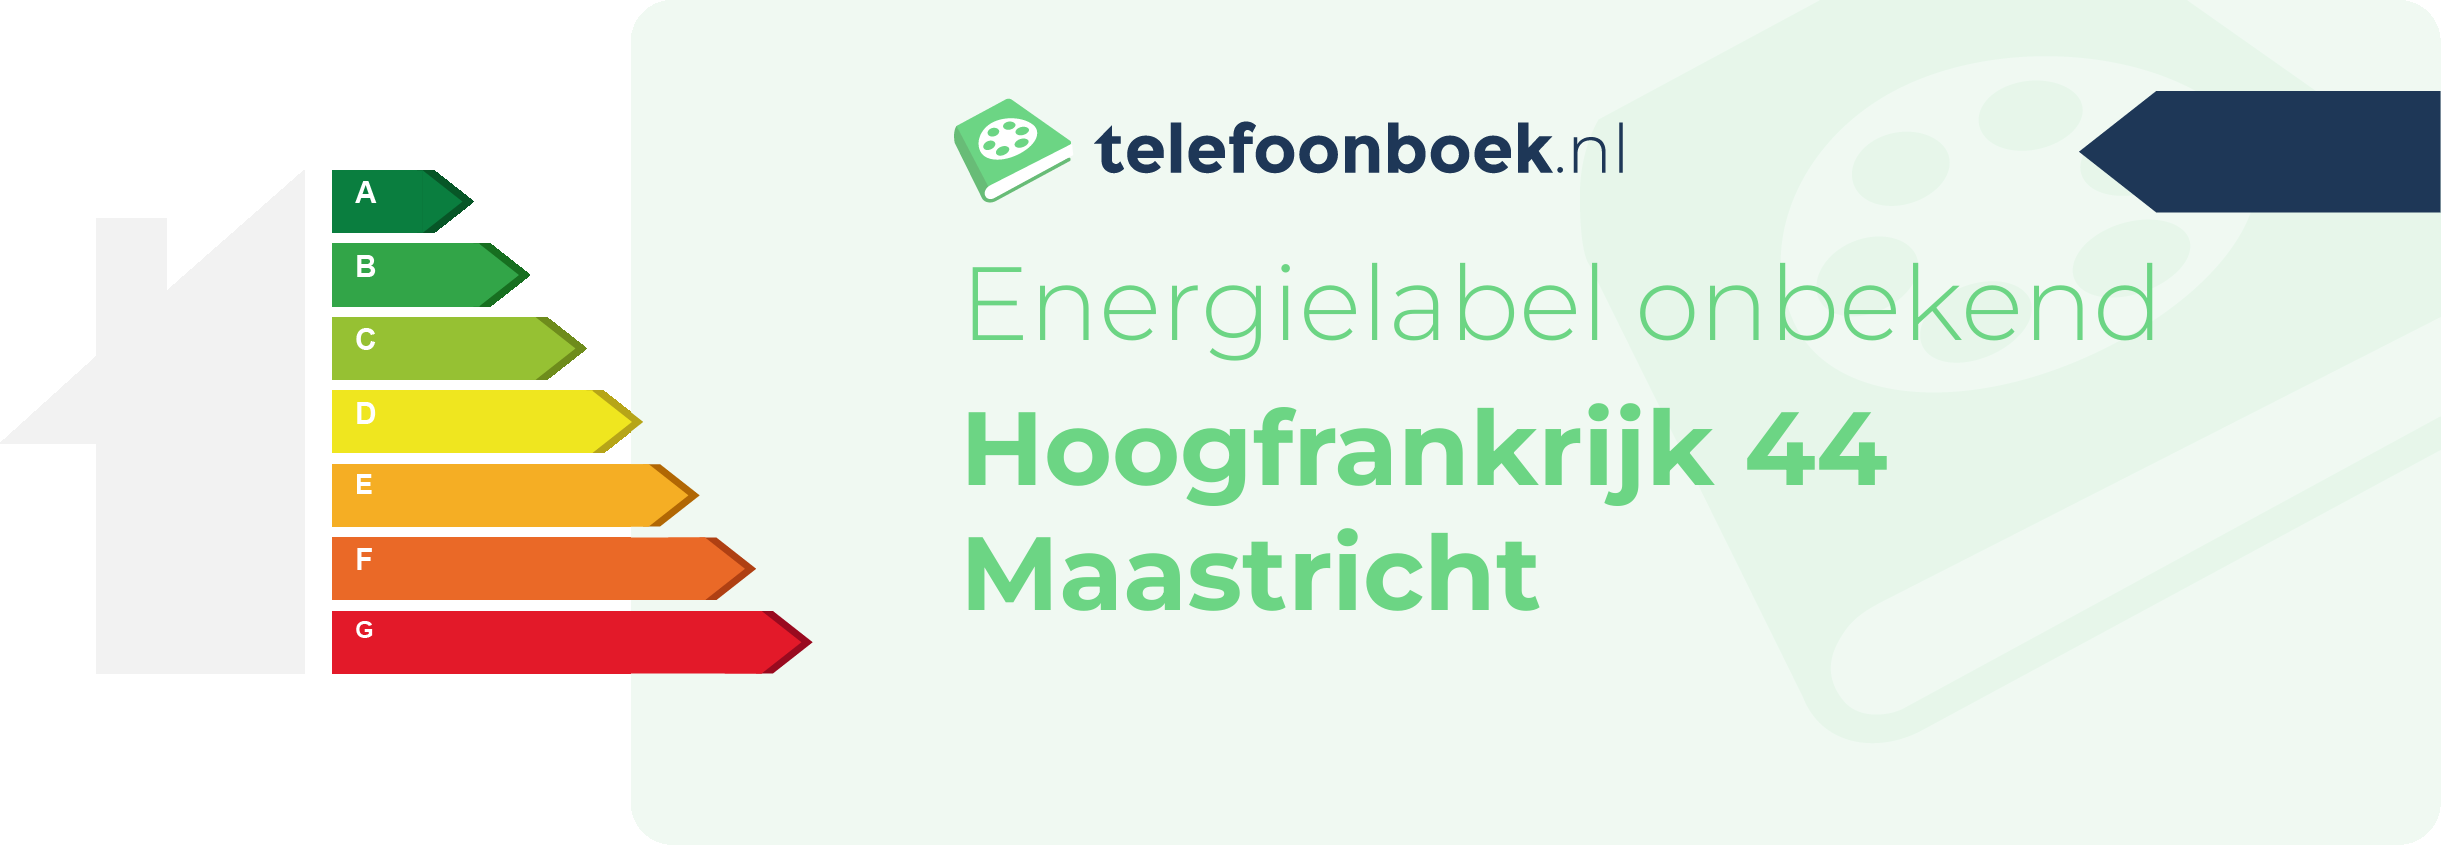 Energielabel Hoogfrankrijk 44 Maastricht